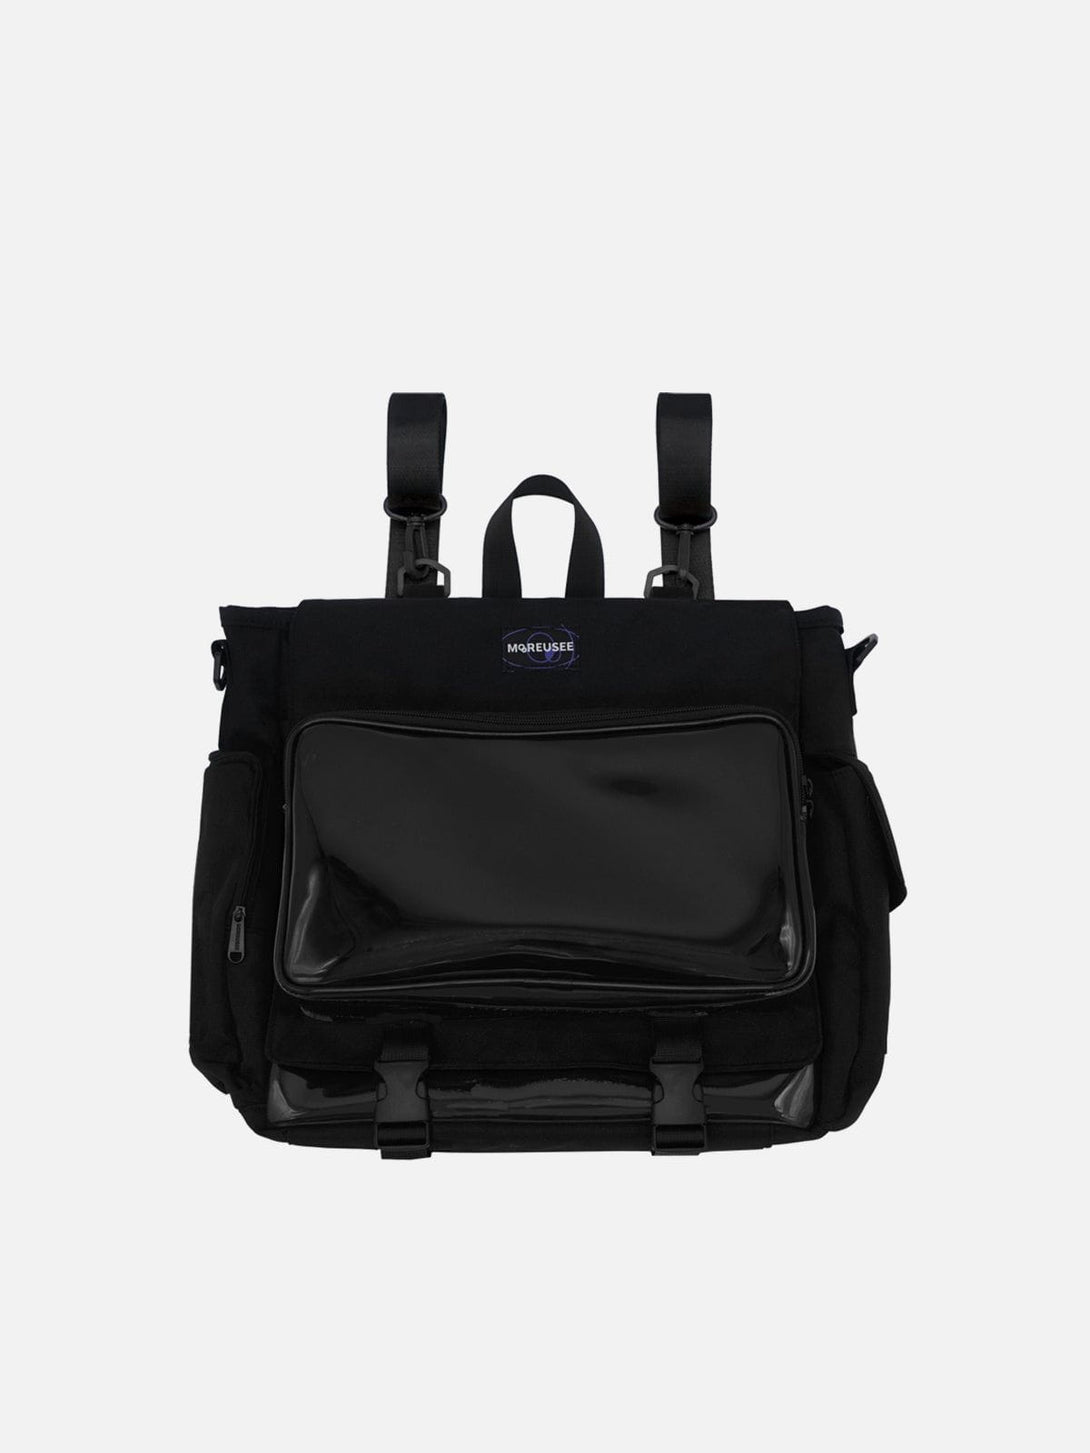 Levefly - Duck Transparent Shoulder Bag - Streetwear Fashion - levefly.com